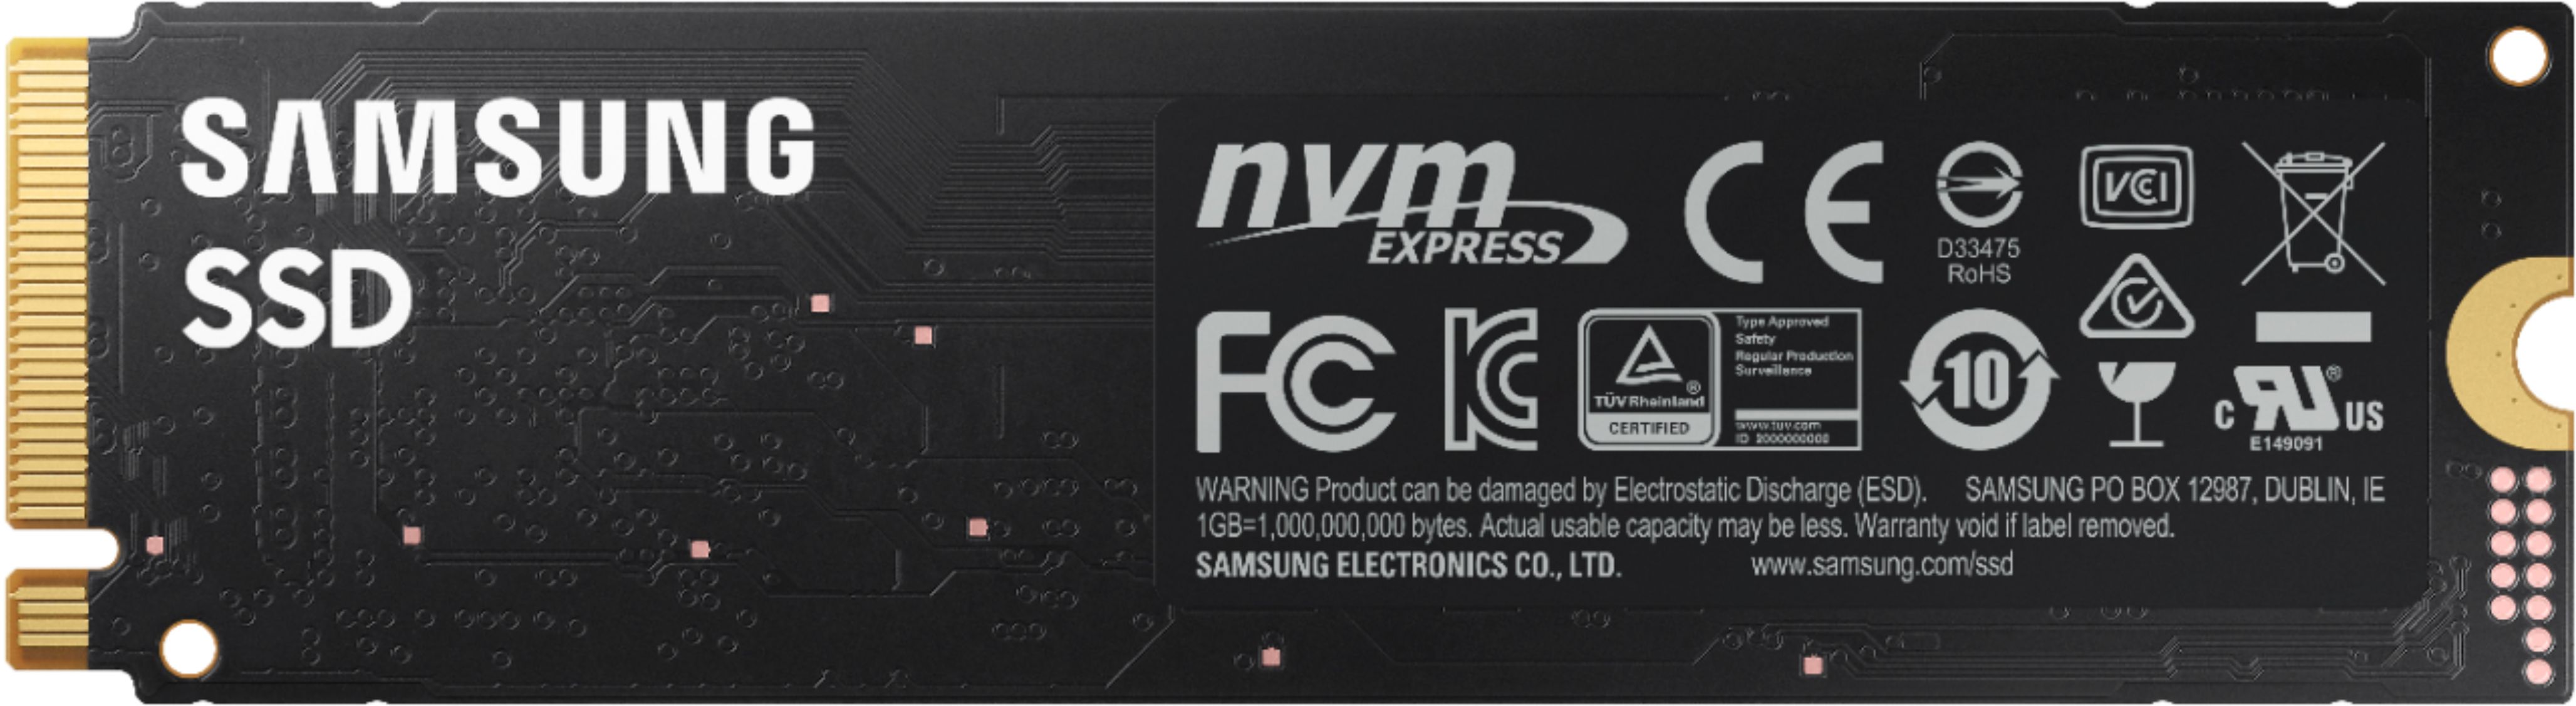 Samsung 980 1TB Internal Gaming SSD PCIe Gen 3 x4 NVMe MZ-V8V1T0B 